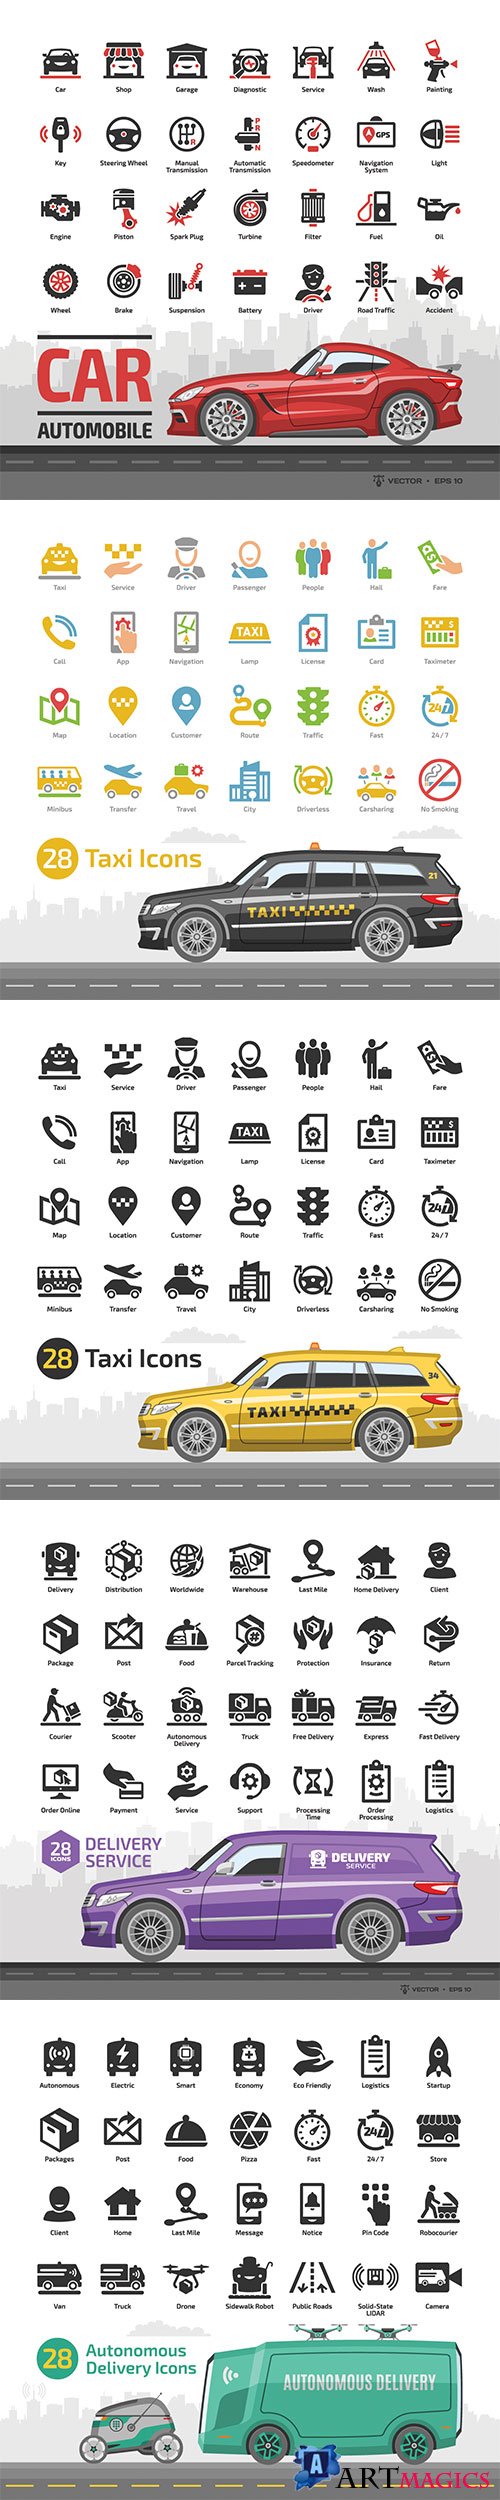 Car icon set with mockup and basic automotive symbols